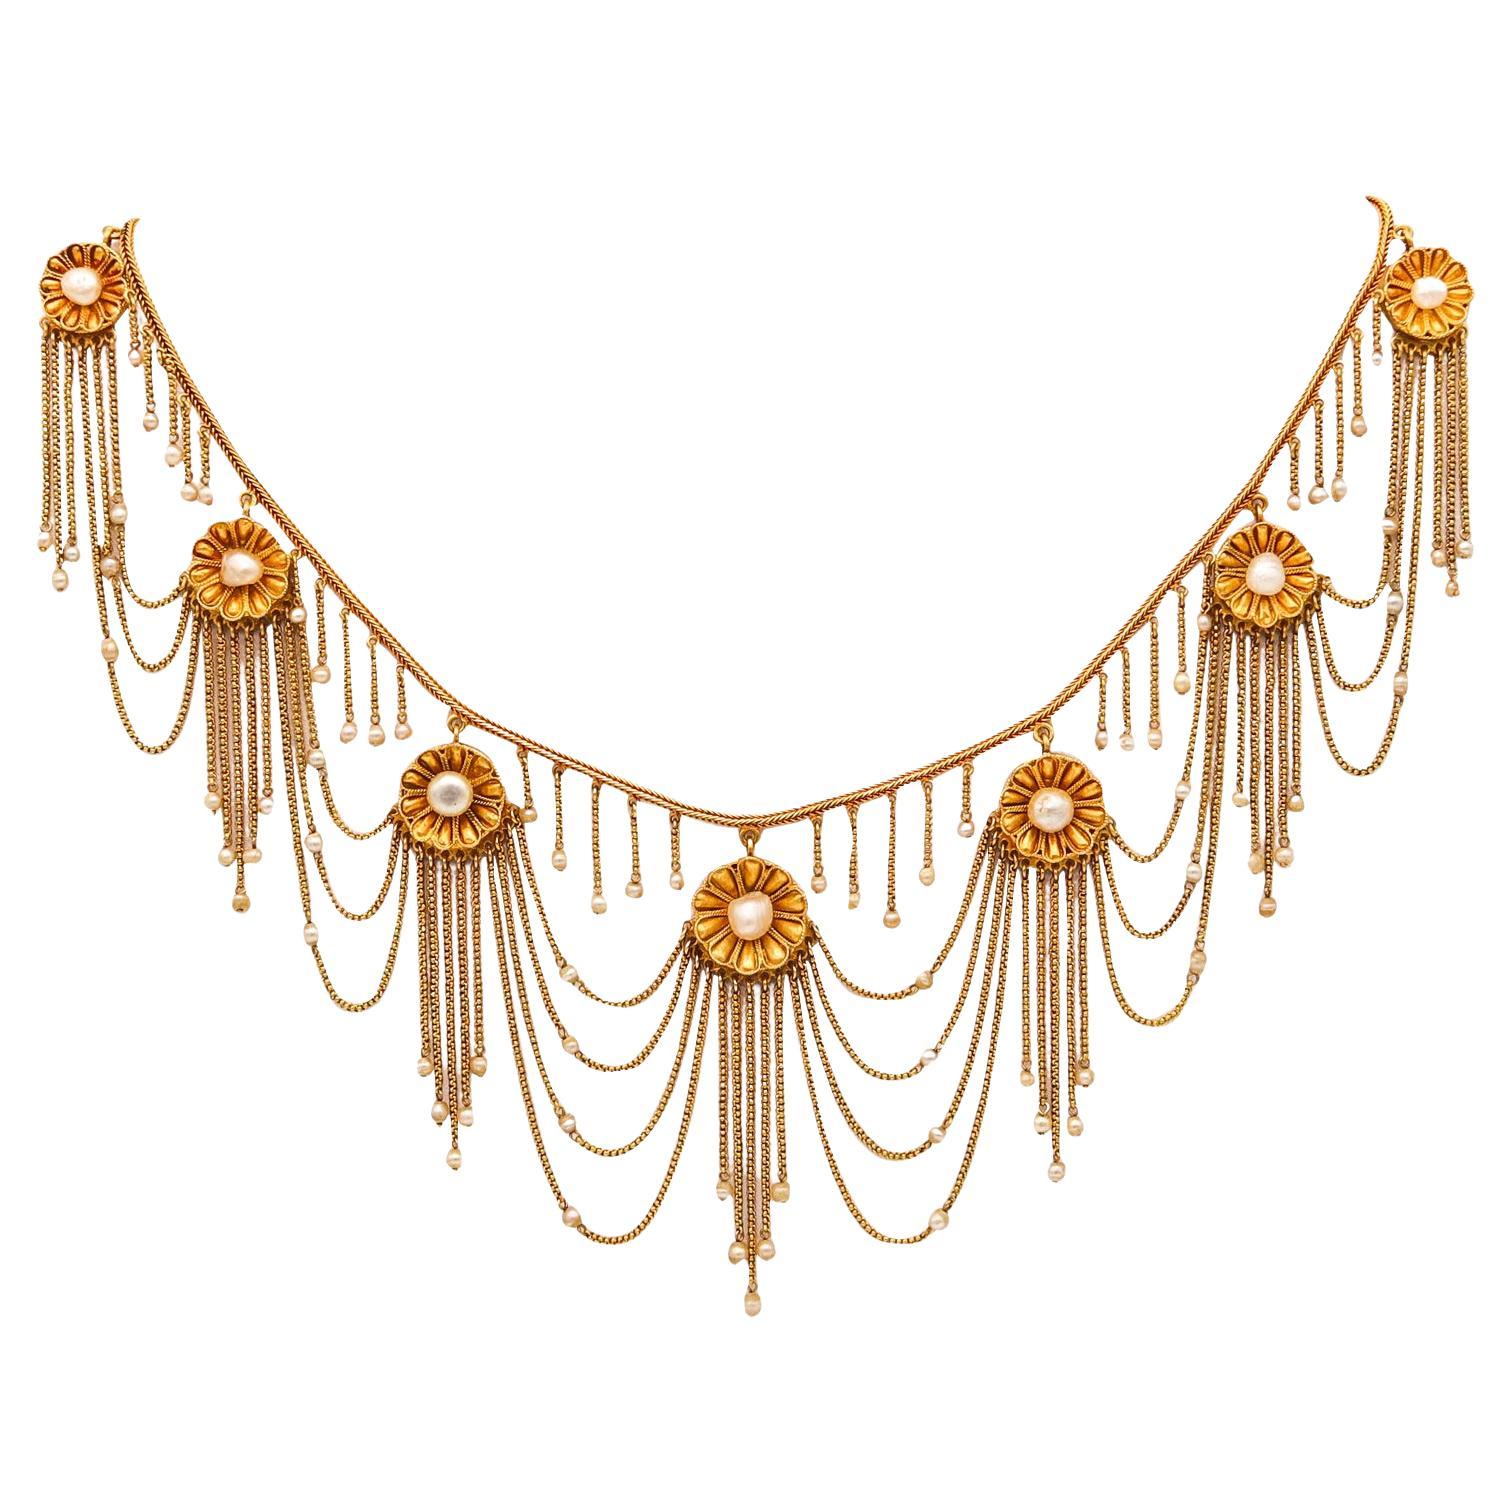 Magnifique collier victorien 1870 à franges festonnées en or jaune 18 carats et perles naturelles